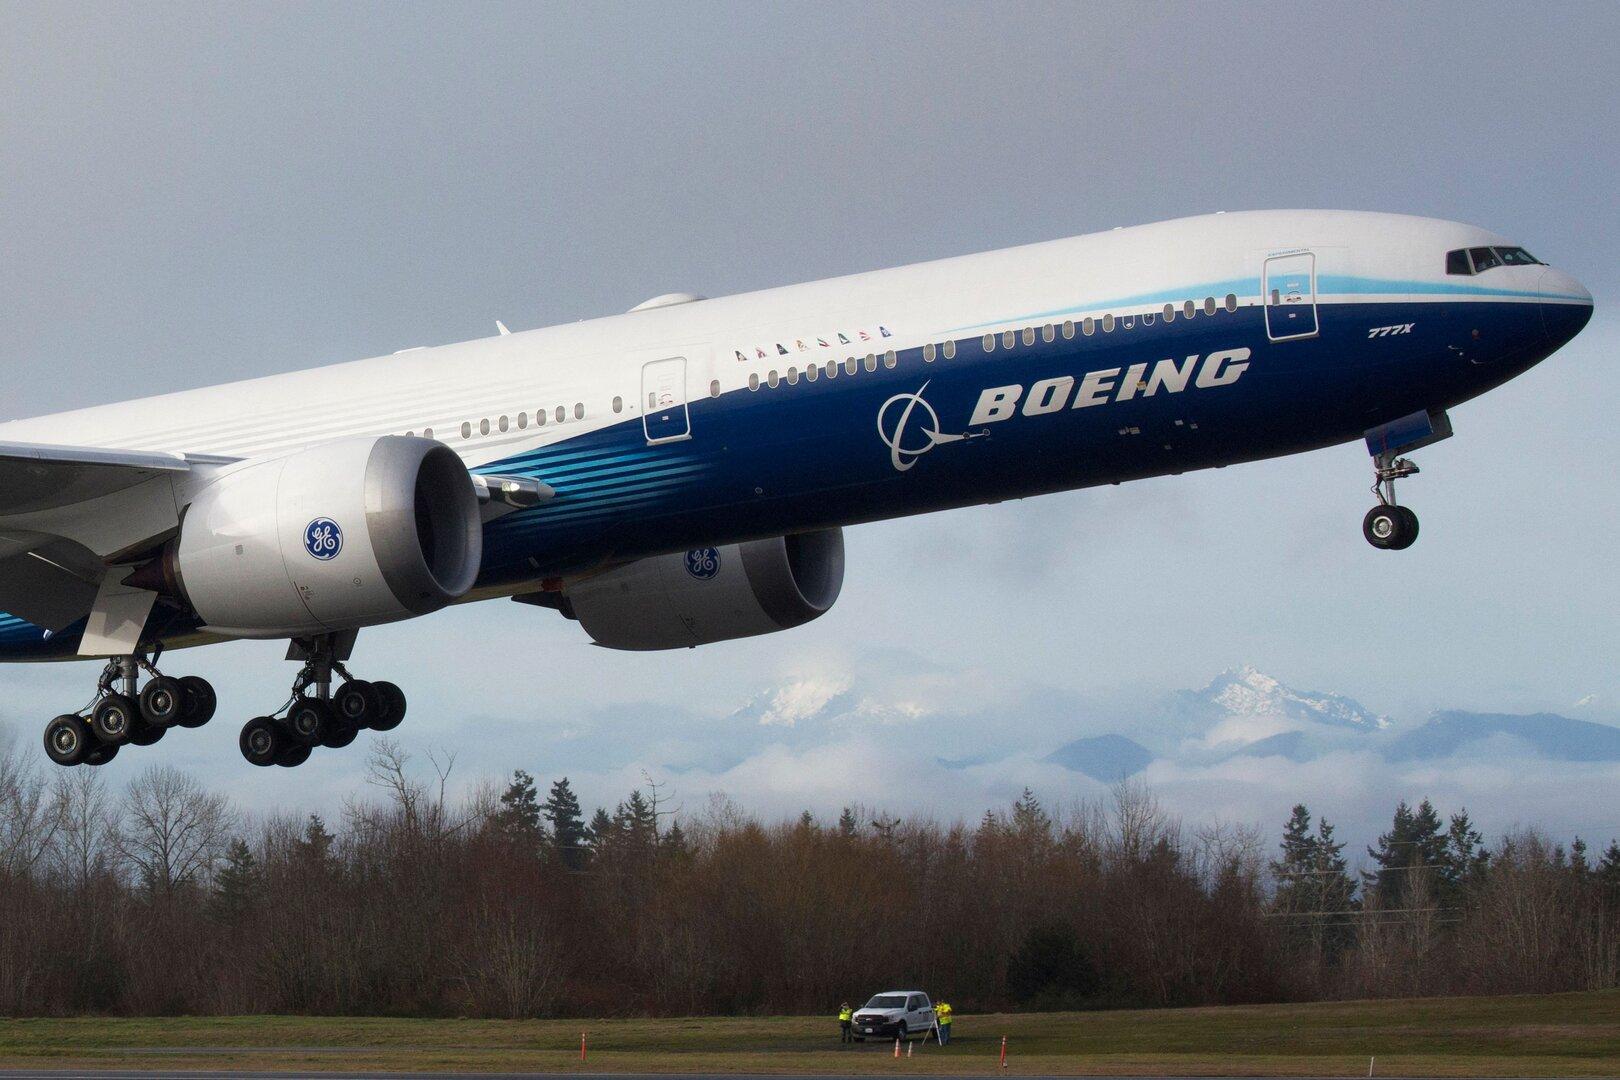 Nach Zwischenfall: Boeing macht Verlust von fast 4 Milliarden Dollar